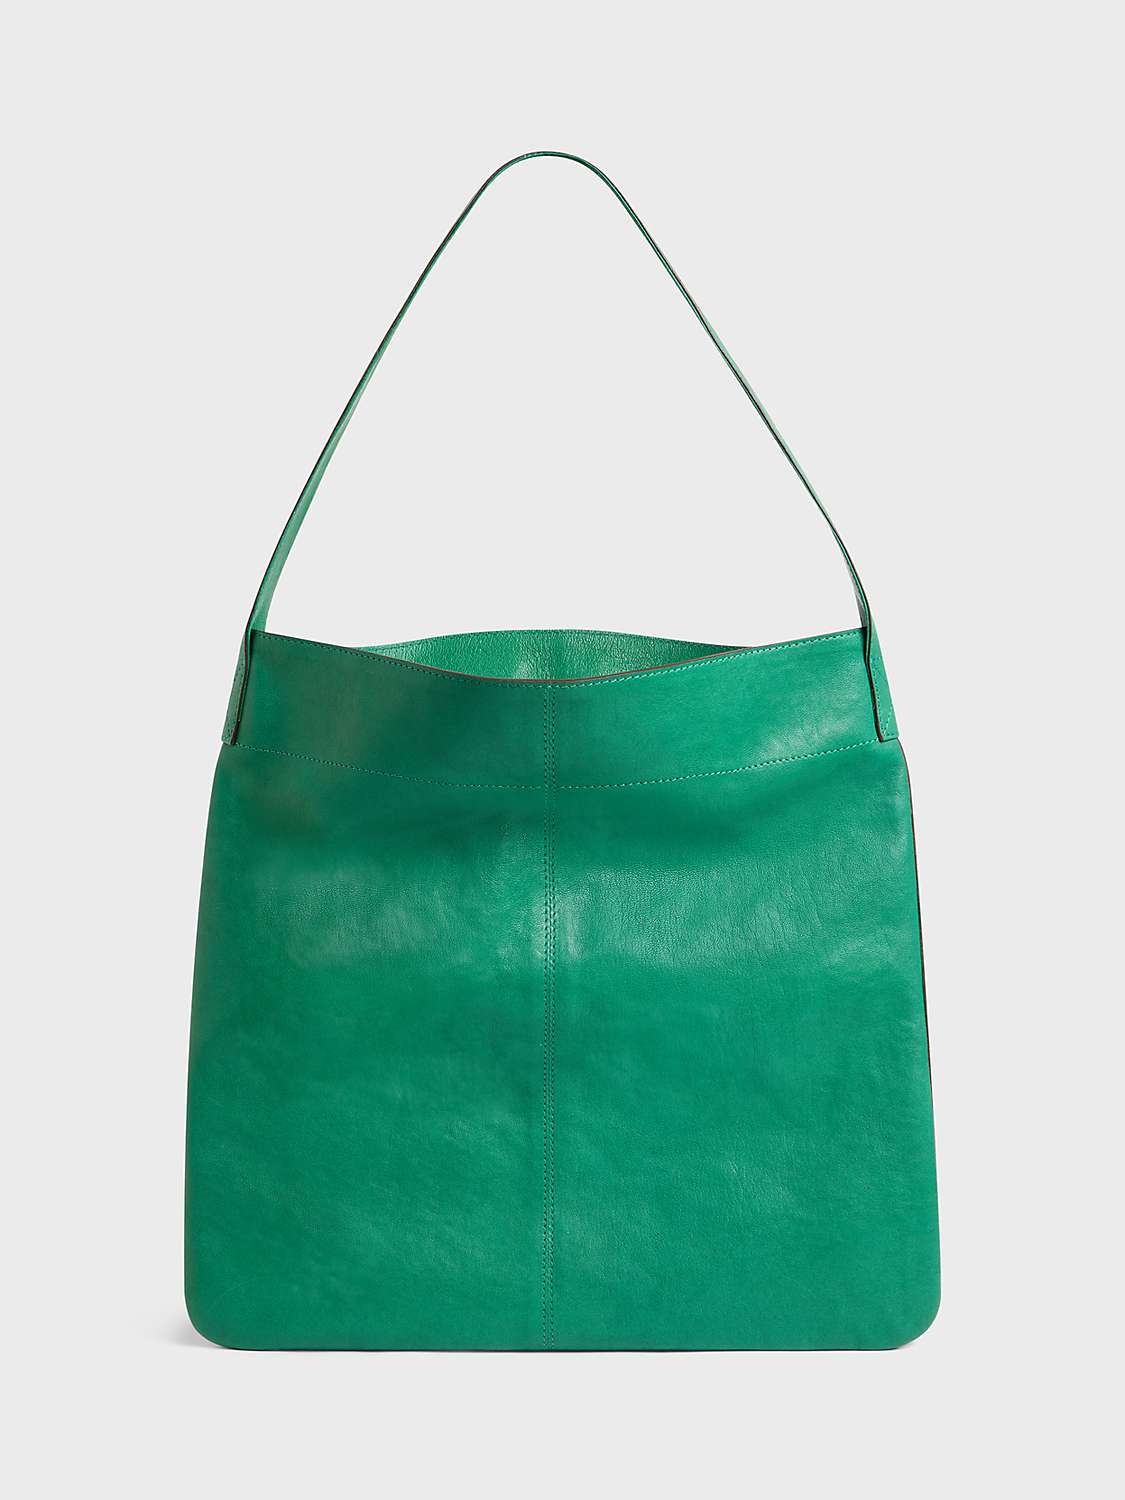 Buy Gerard Darel The Lady Bag Online at johnlewis.com